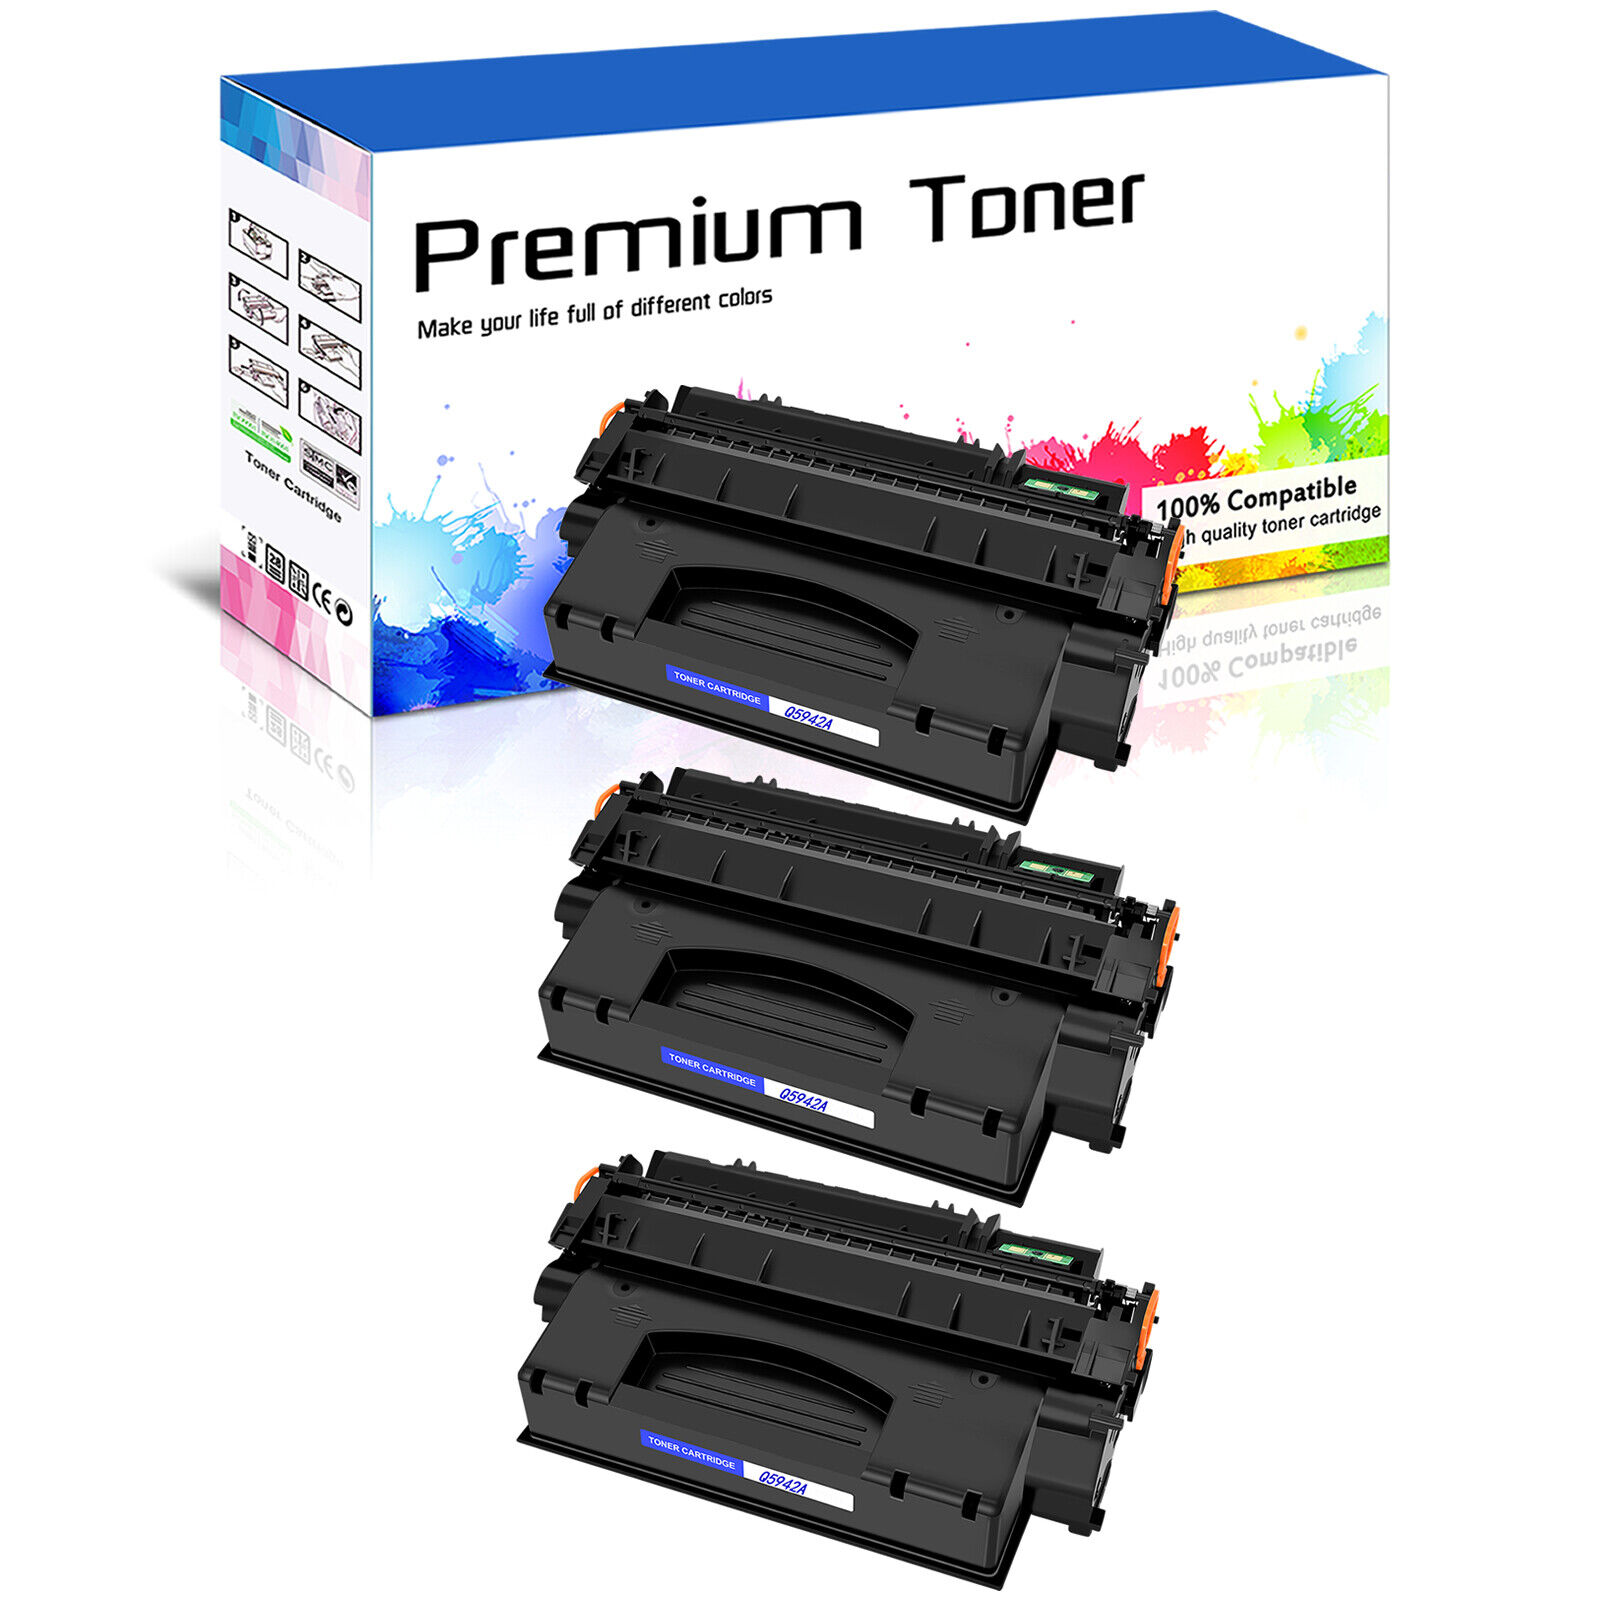 3 PACK Black Q5942A 42A Toner For HP LaserJet 4240 4240n 4250 4350 4350tn 4350n